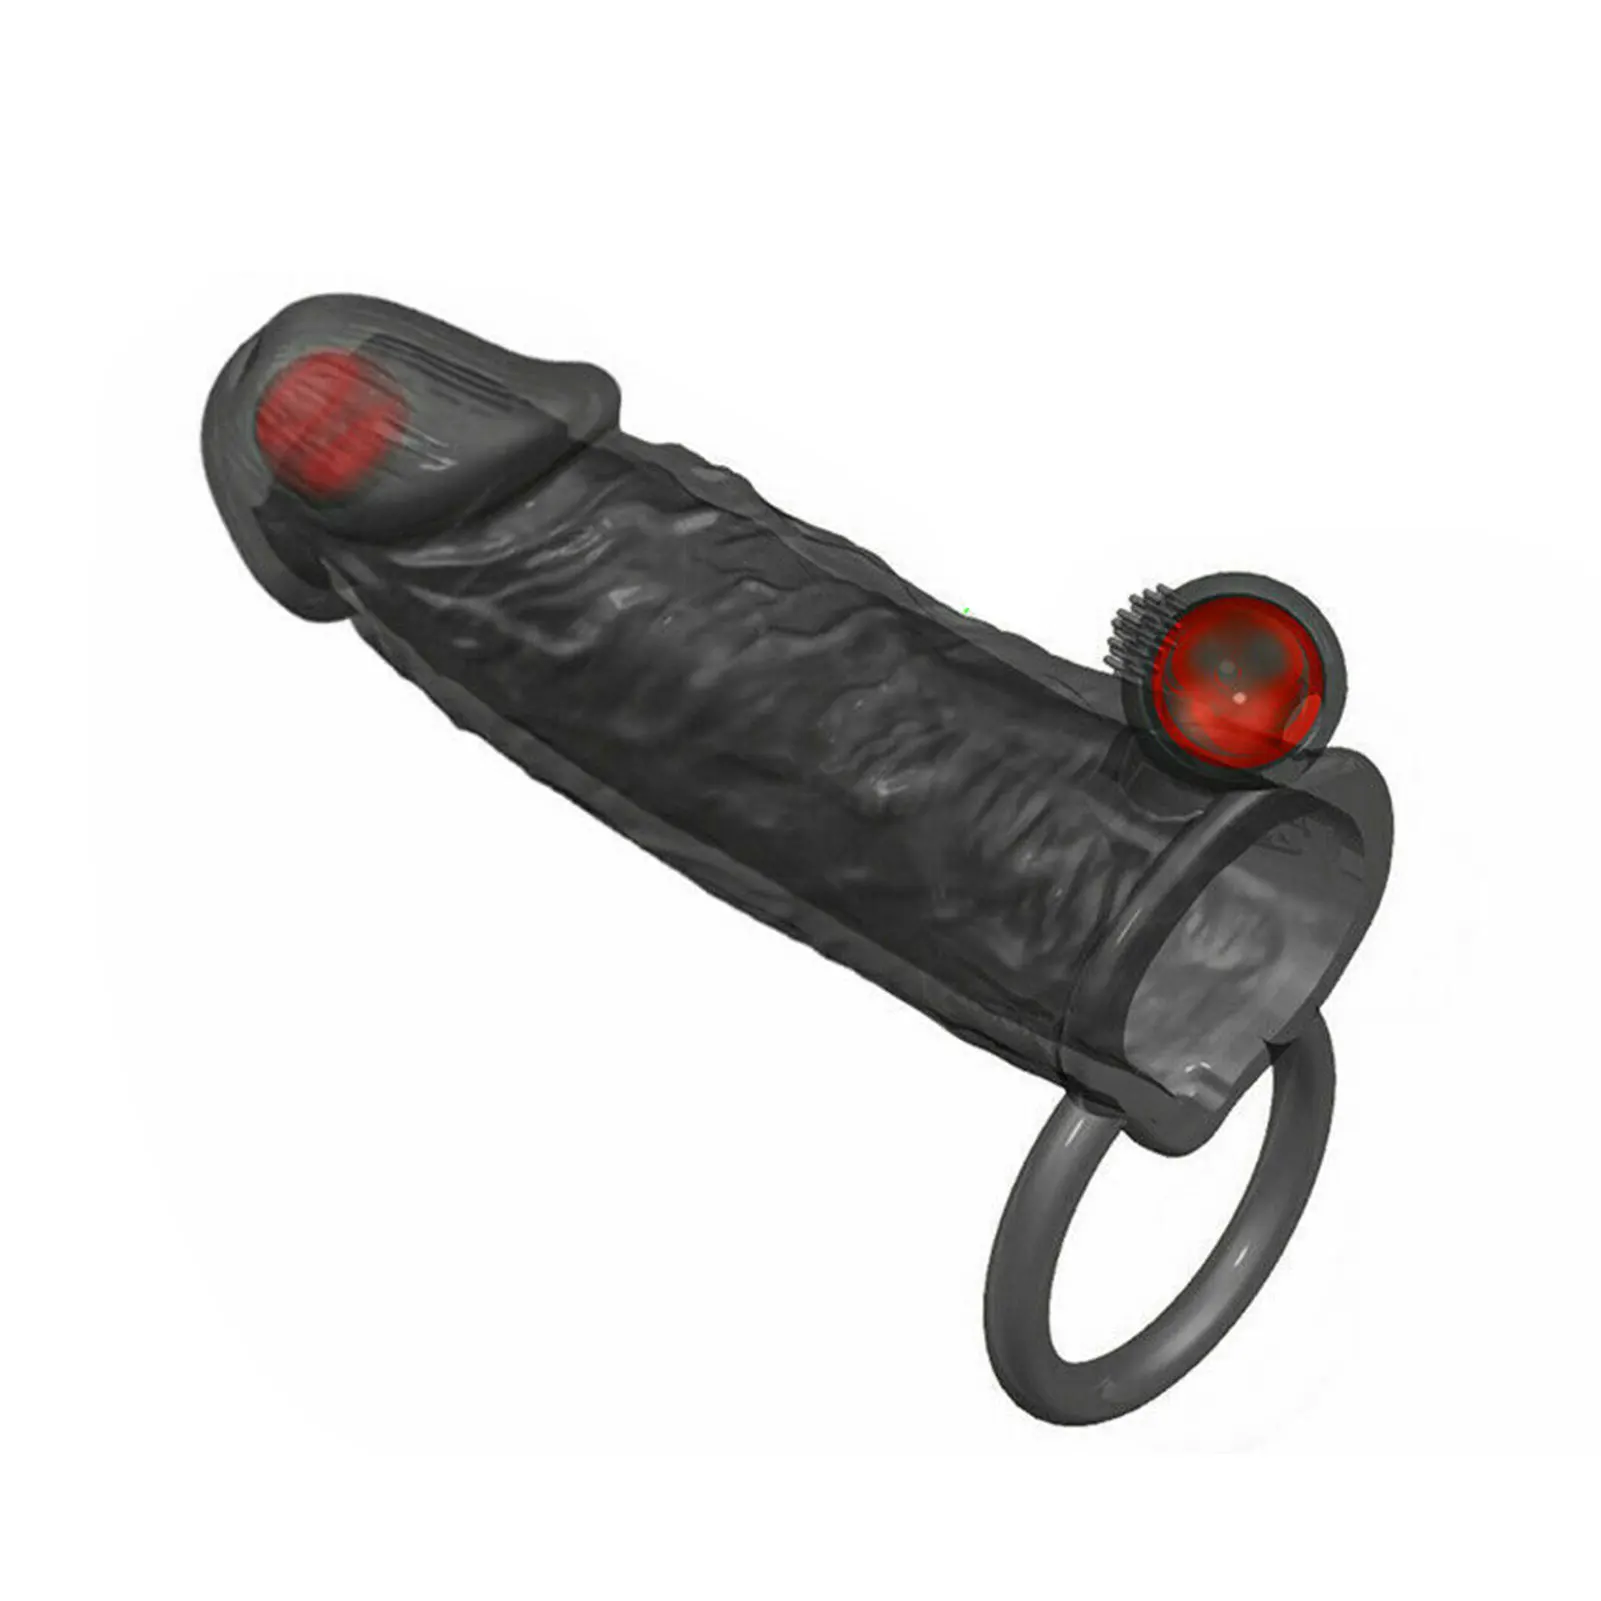 Горячее кольцо для увеличения пениса, рукав для пениса, многократная стимуляция, Водонепроницаемая Сексуальная игрушка для лучшего сексуального удовольствия Изображение 0